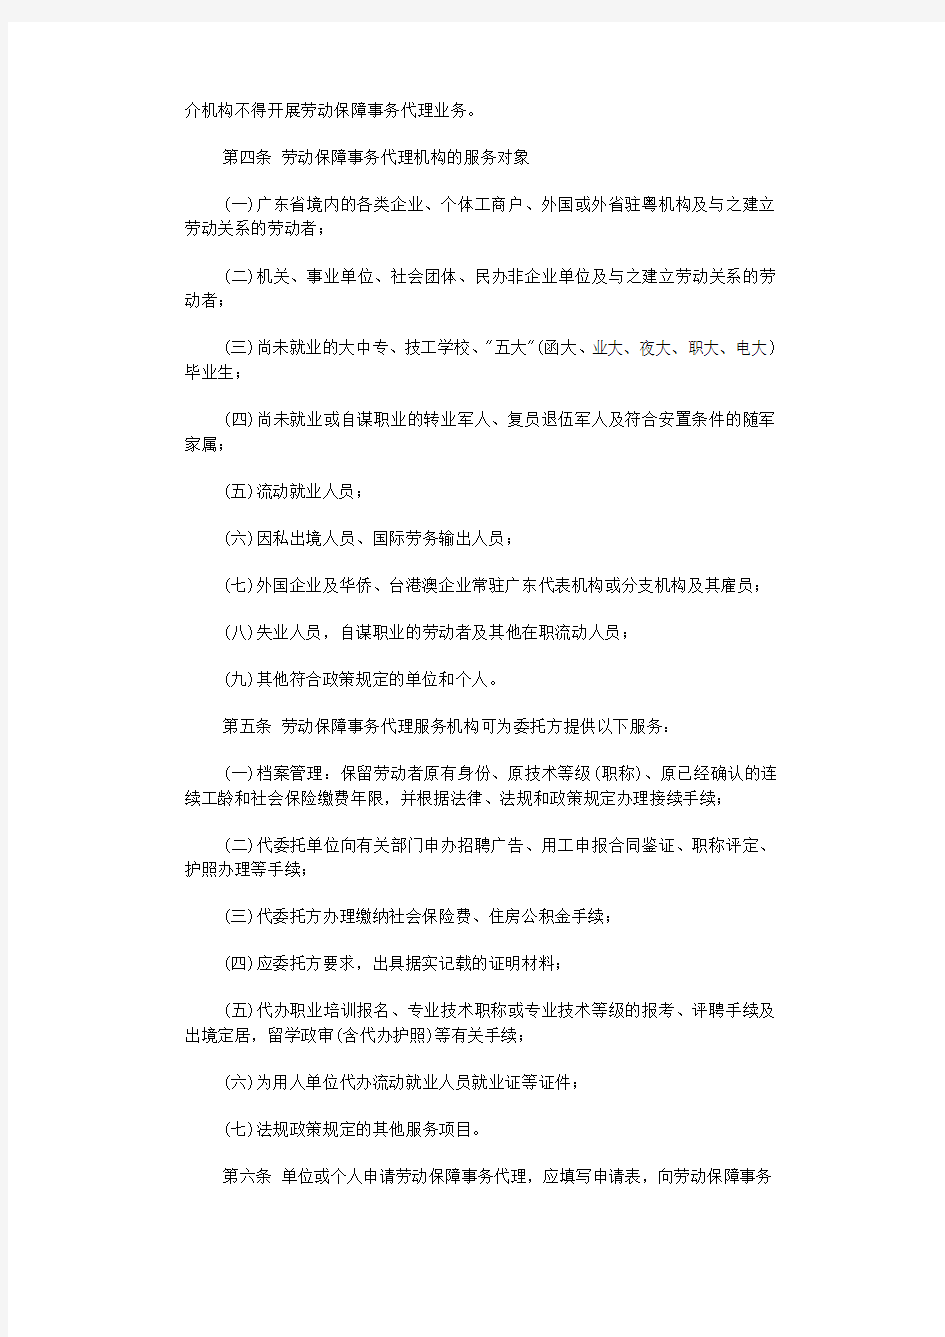 社保代理是合法的,2001年广东省劳动与社会保障厅有文件说明